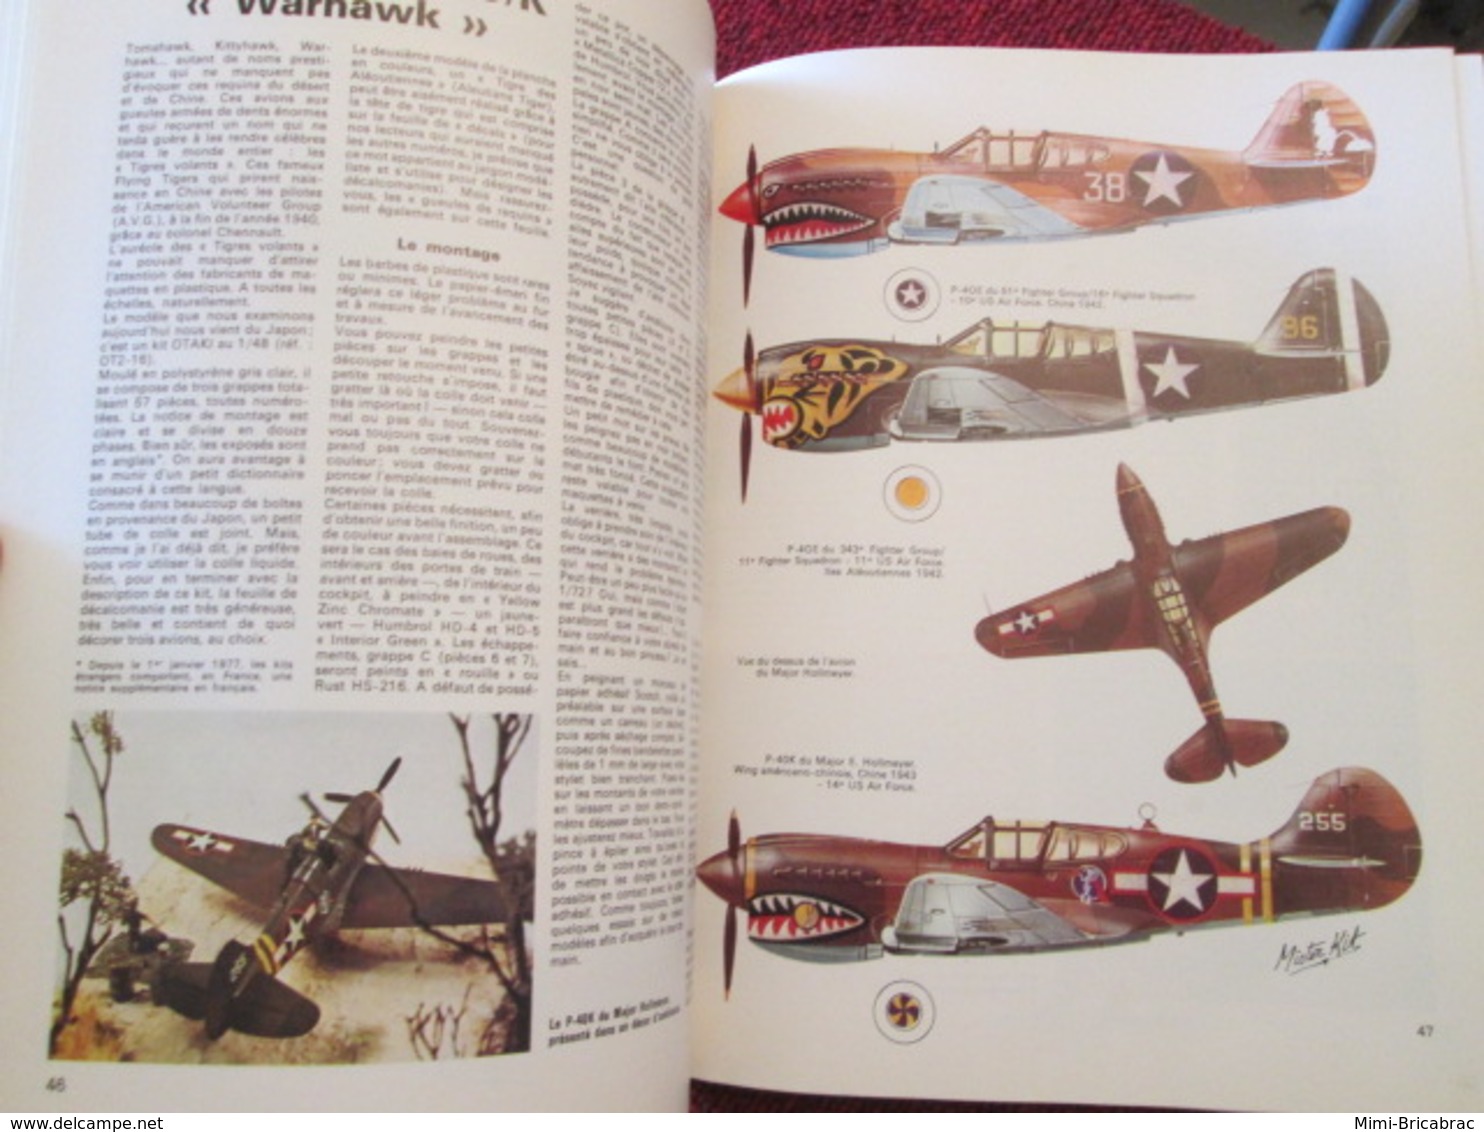 CAGI3  EDITIONS ATLAS + MISTER KIT / LES PLUS BEAUX AVIONS DE LA 2e GM MAQUETTES EN PLASTIQUE 64 P 1981 - Vliegtuigen